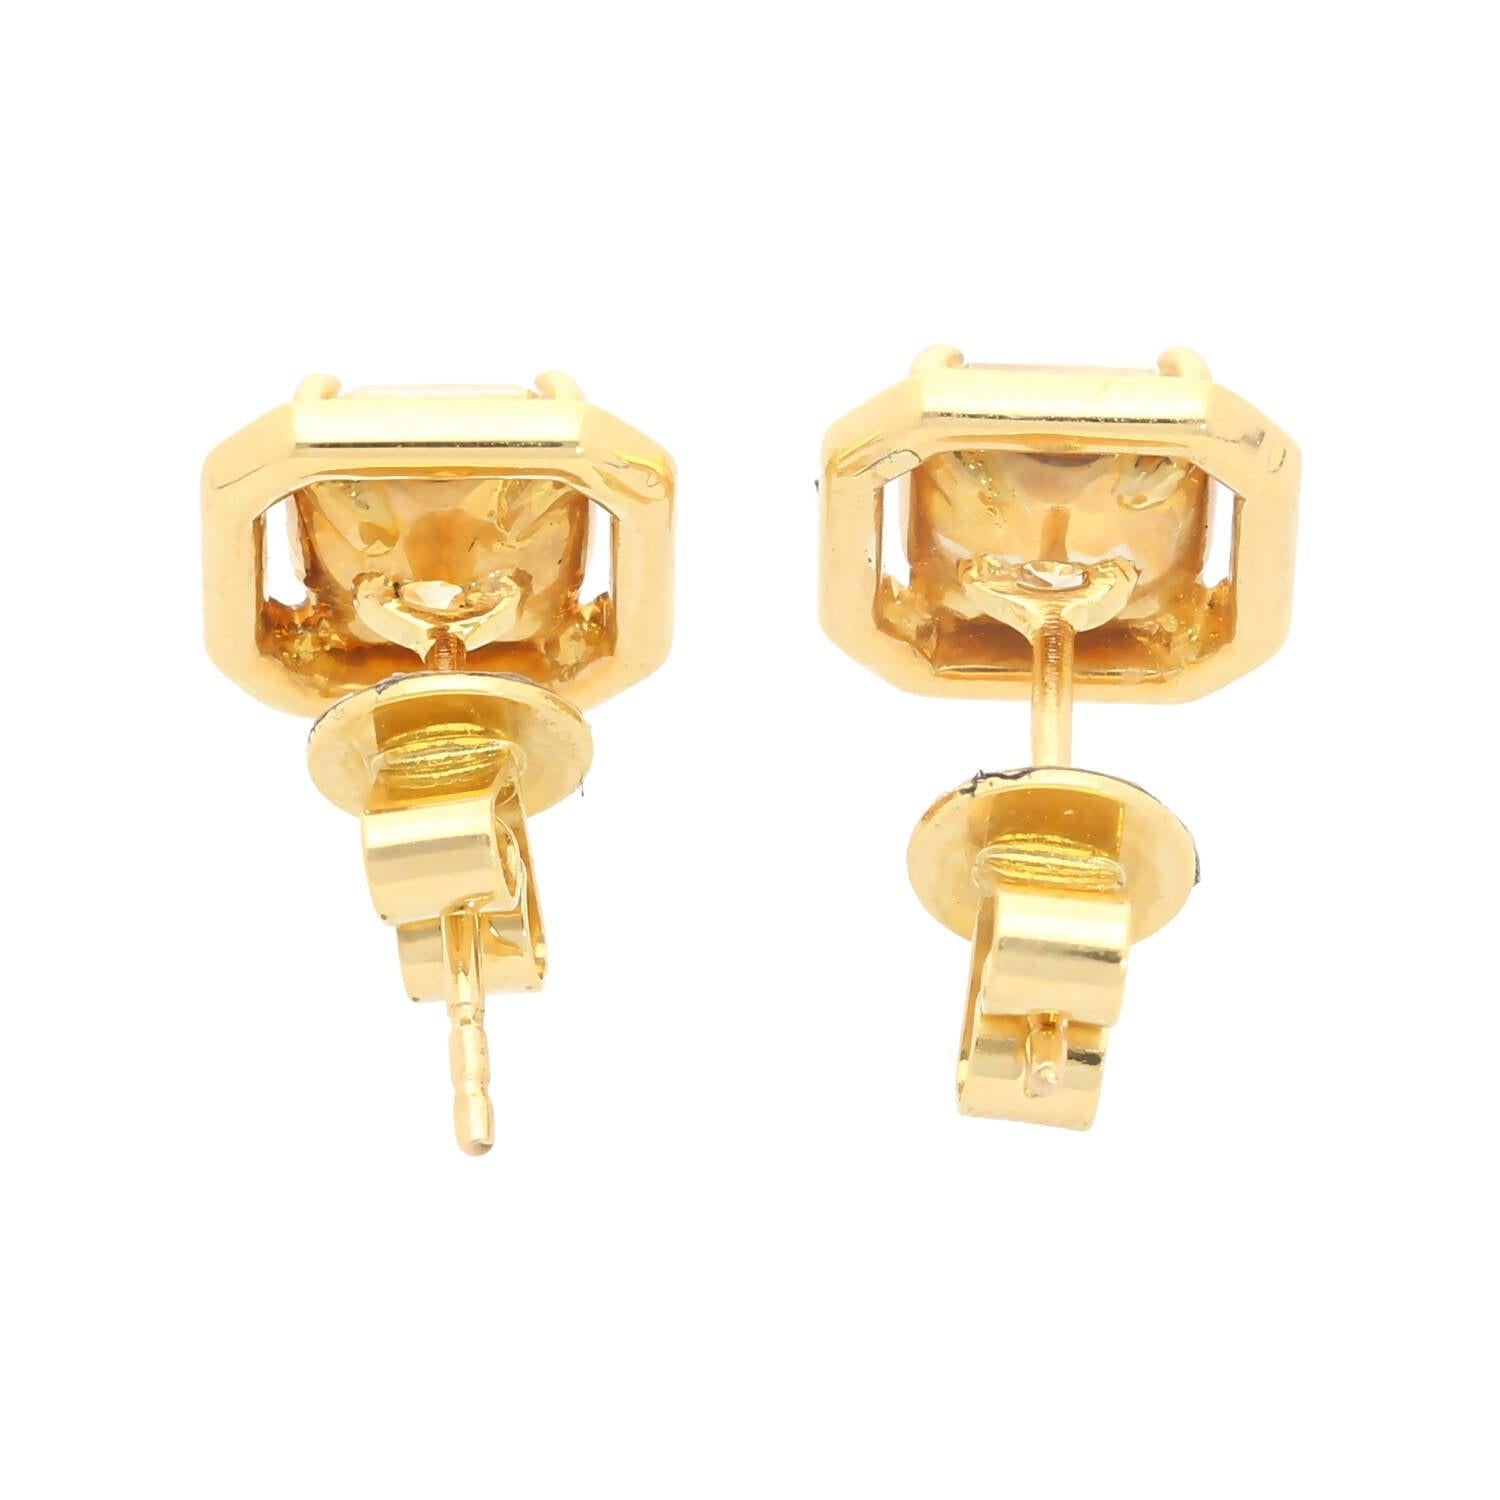 GIA Certified Natural 3 Carat TW Fancy Yellow Diamond Radiant Cut Stud Earrings in 18K Gold-Earrings-ASSAY